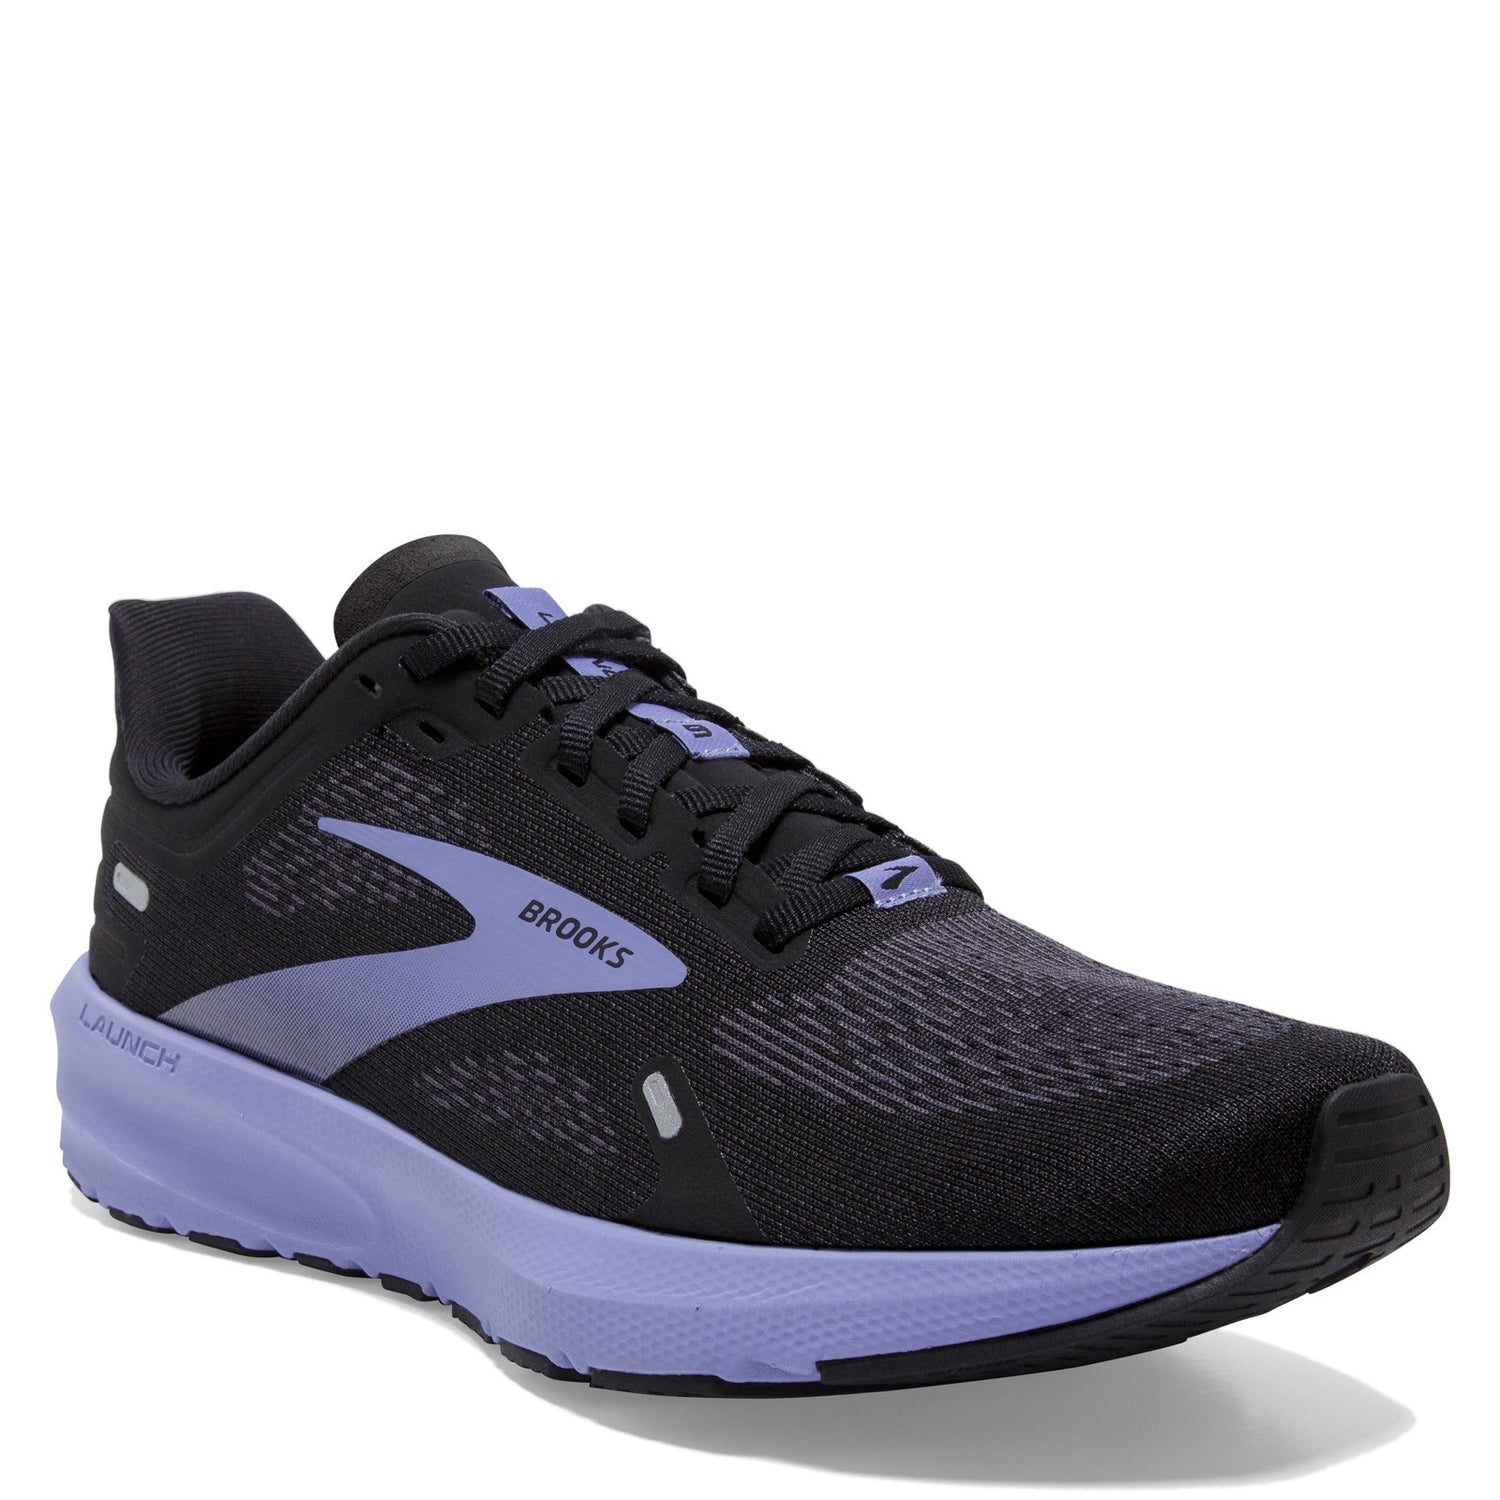 Peltz Shoes  Women's Brooks Launch 9 Running Shoe - Wide Width Black/Ebony/Purple 120373 1D 060